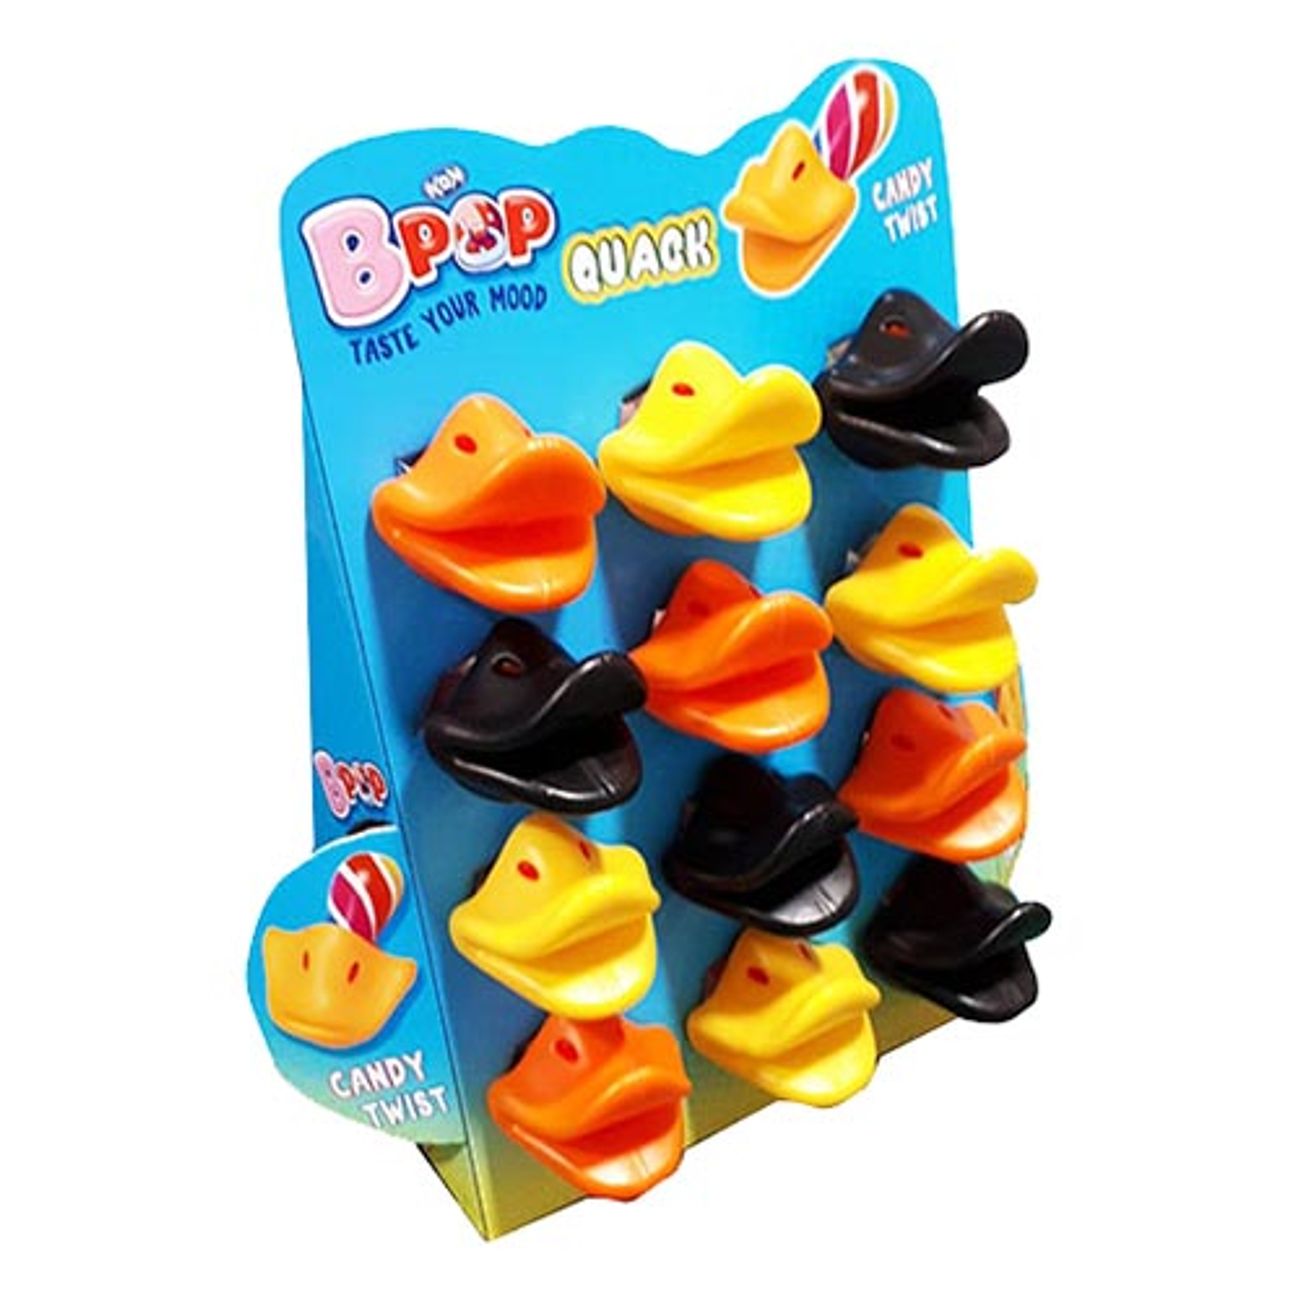 b-pop-quack-1